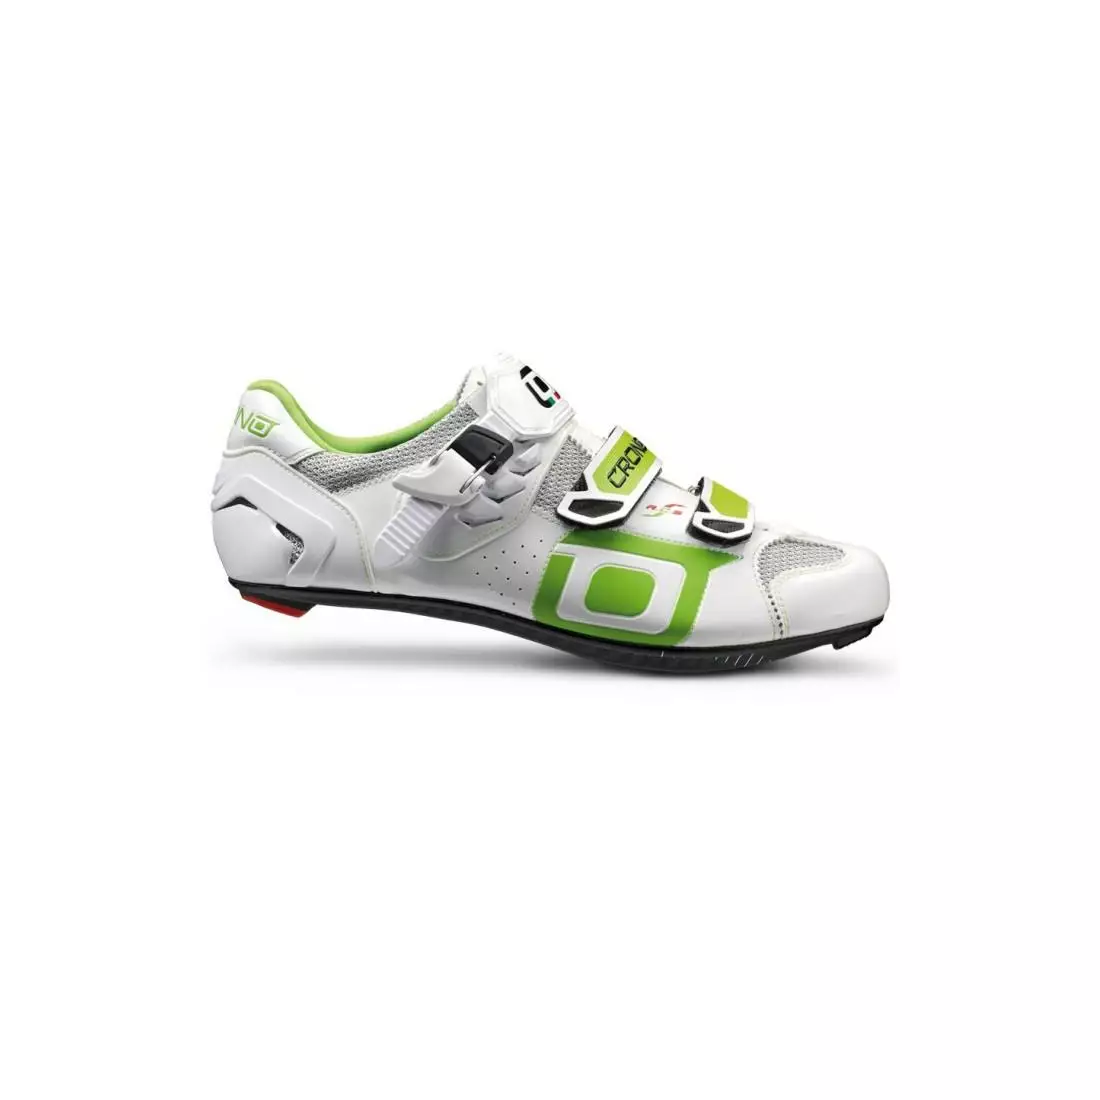 CRONO CLONE NYLON - országúti kerékpáros cipő - színe: fehér/zöld